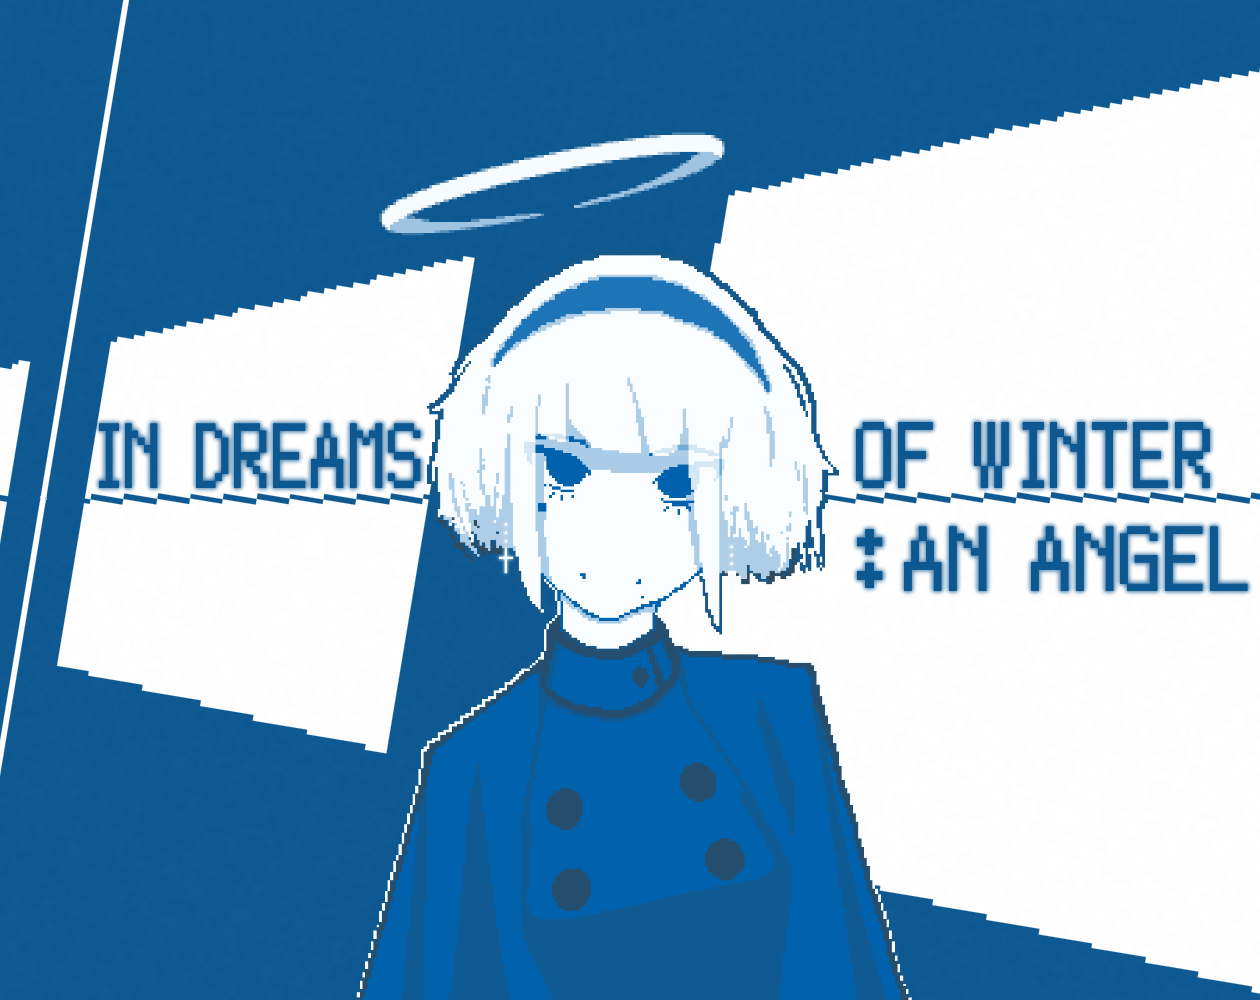 In Dreams Of Winter: An Angel